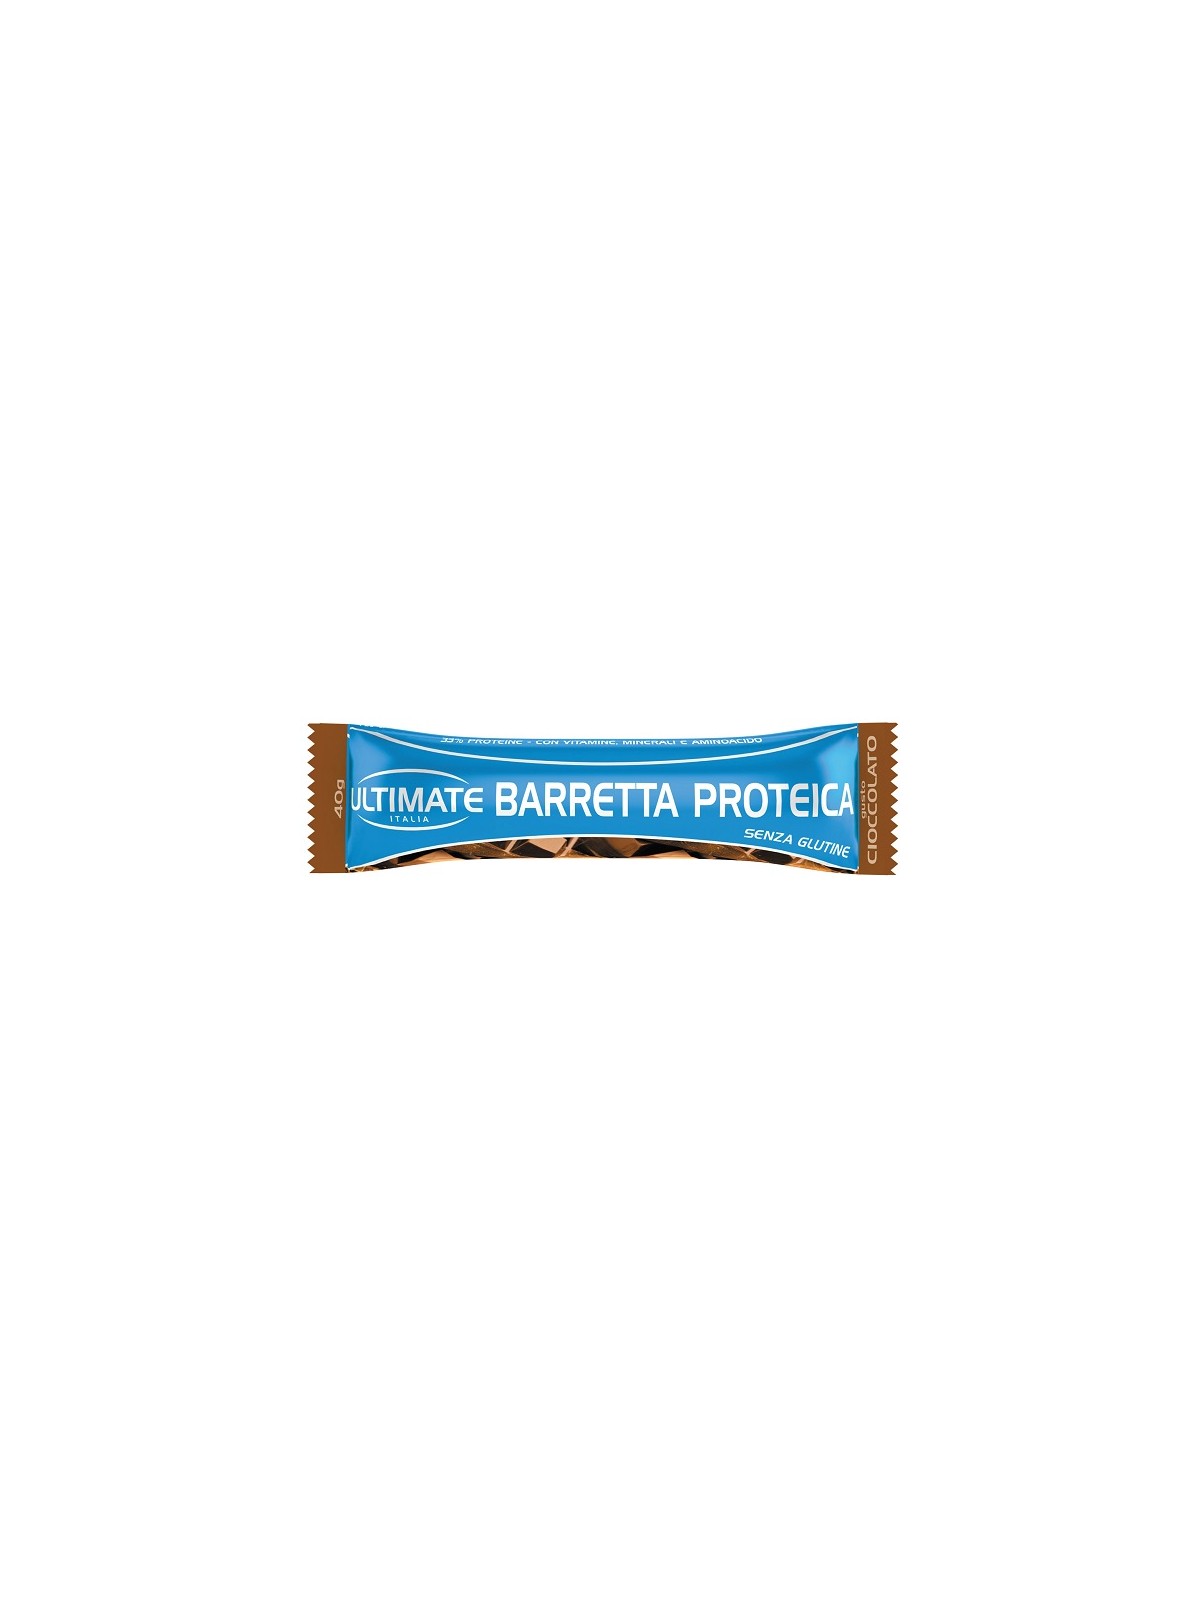 Ultimate Barretta Proteica 33% in proteine gusto Cioccolato da 40 g